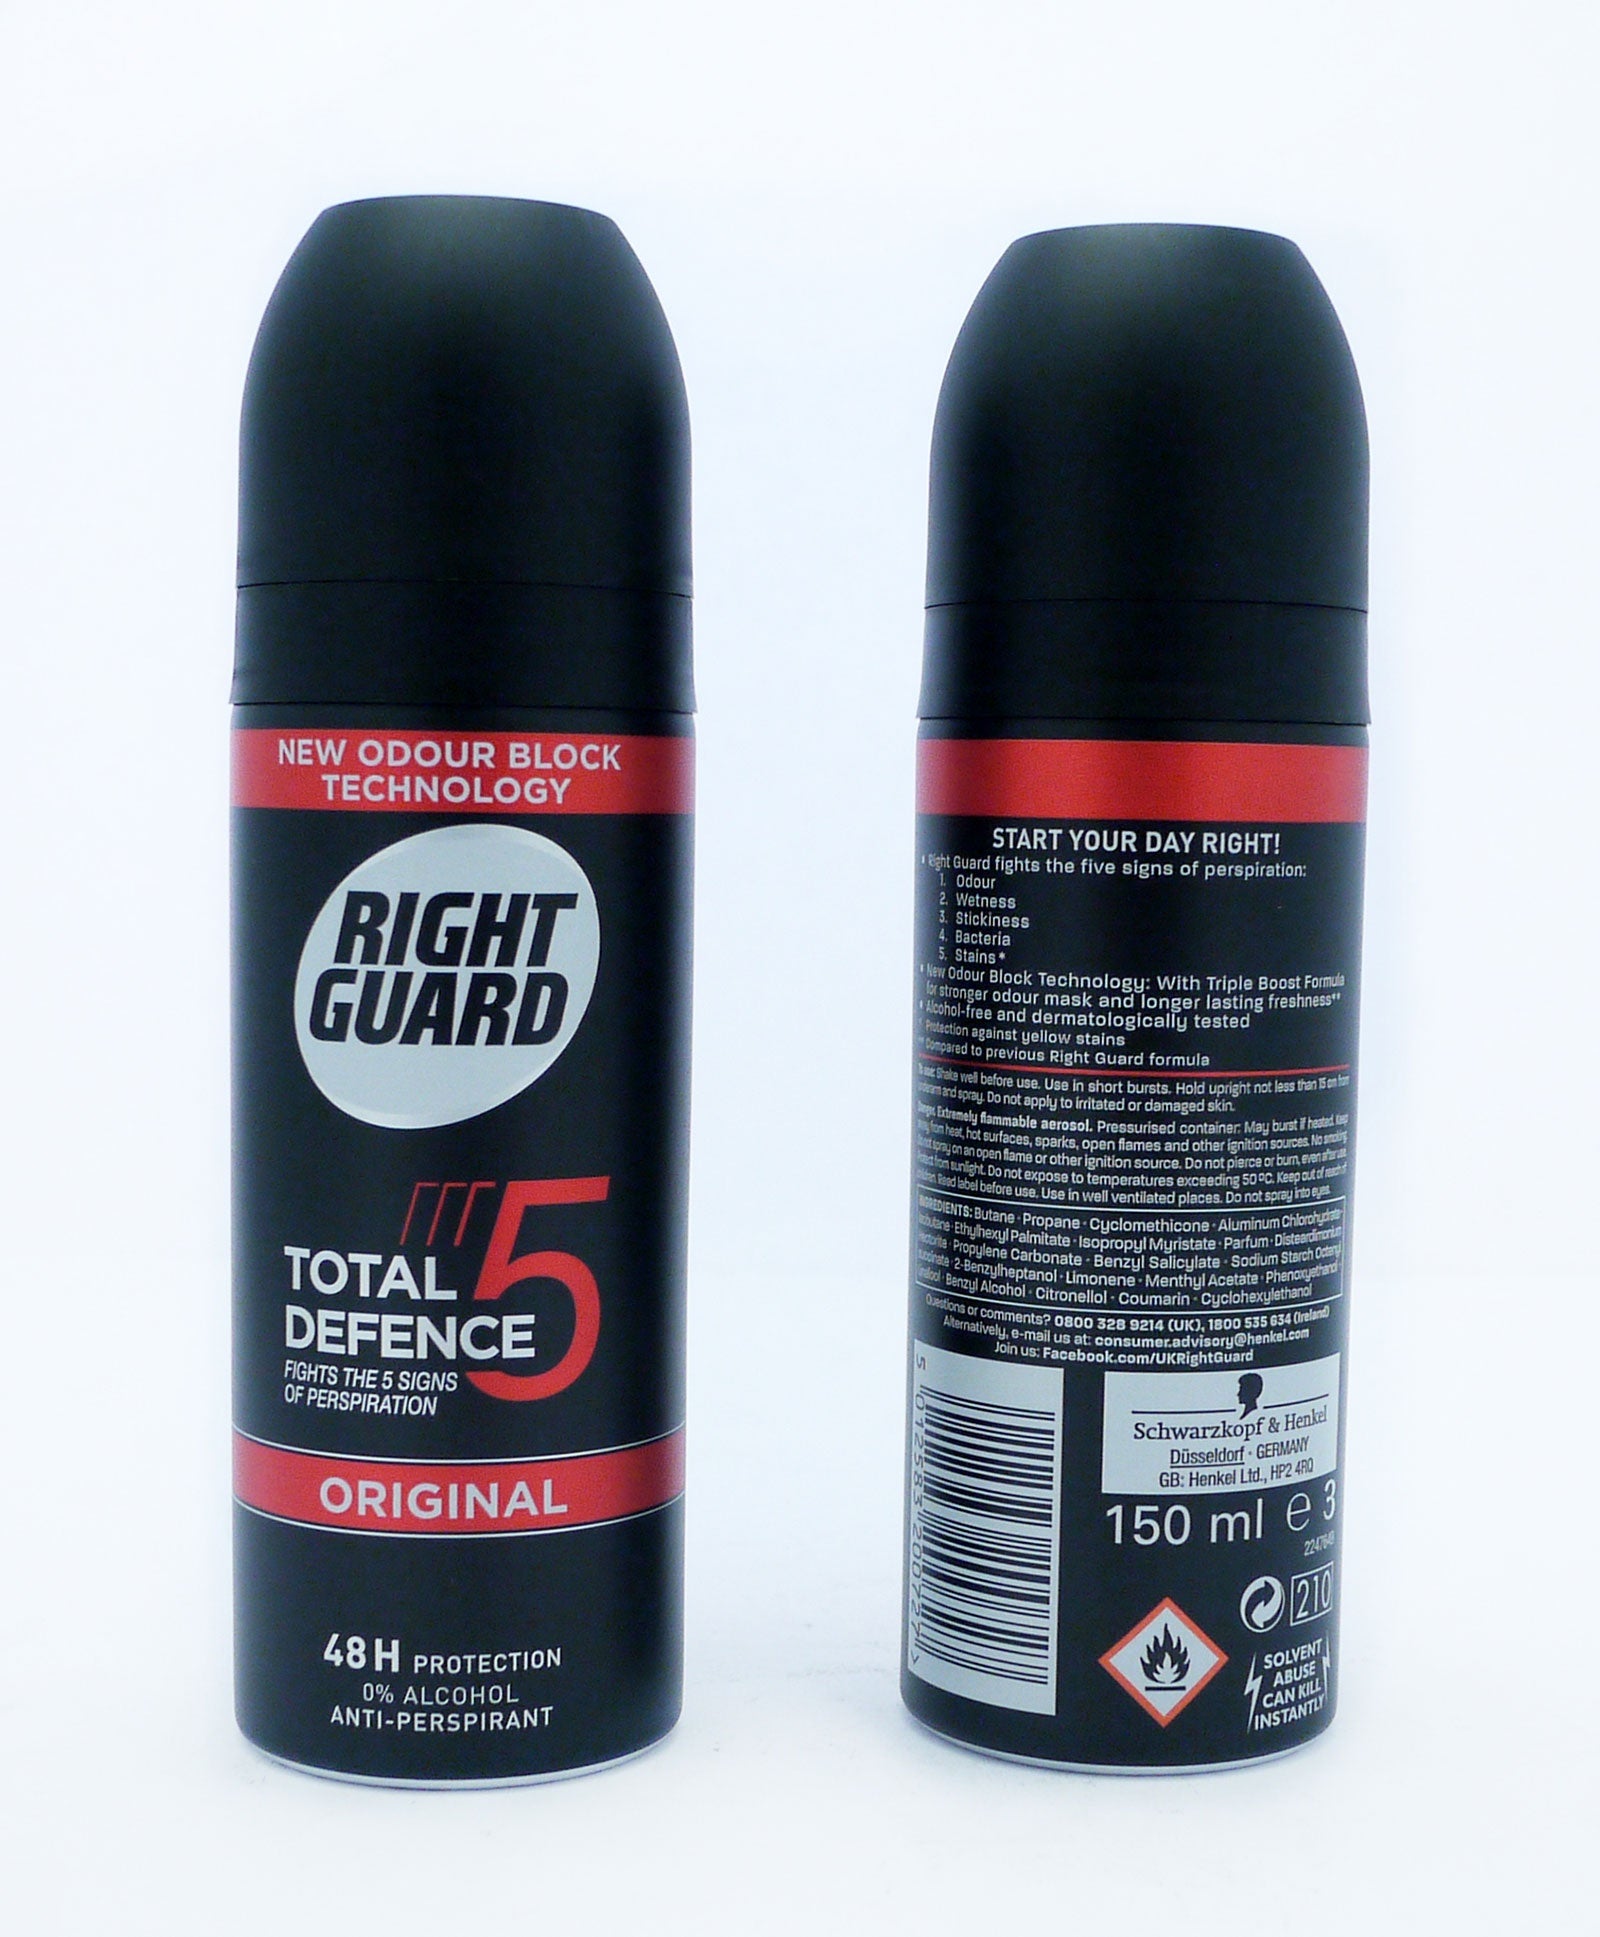 Right Guard A/P Deodorant Total Defense Original 150ml*